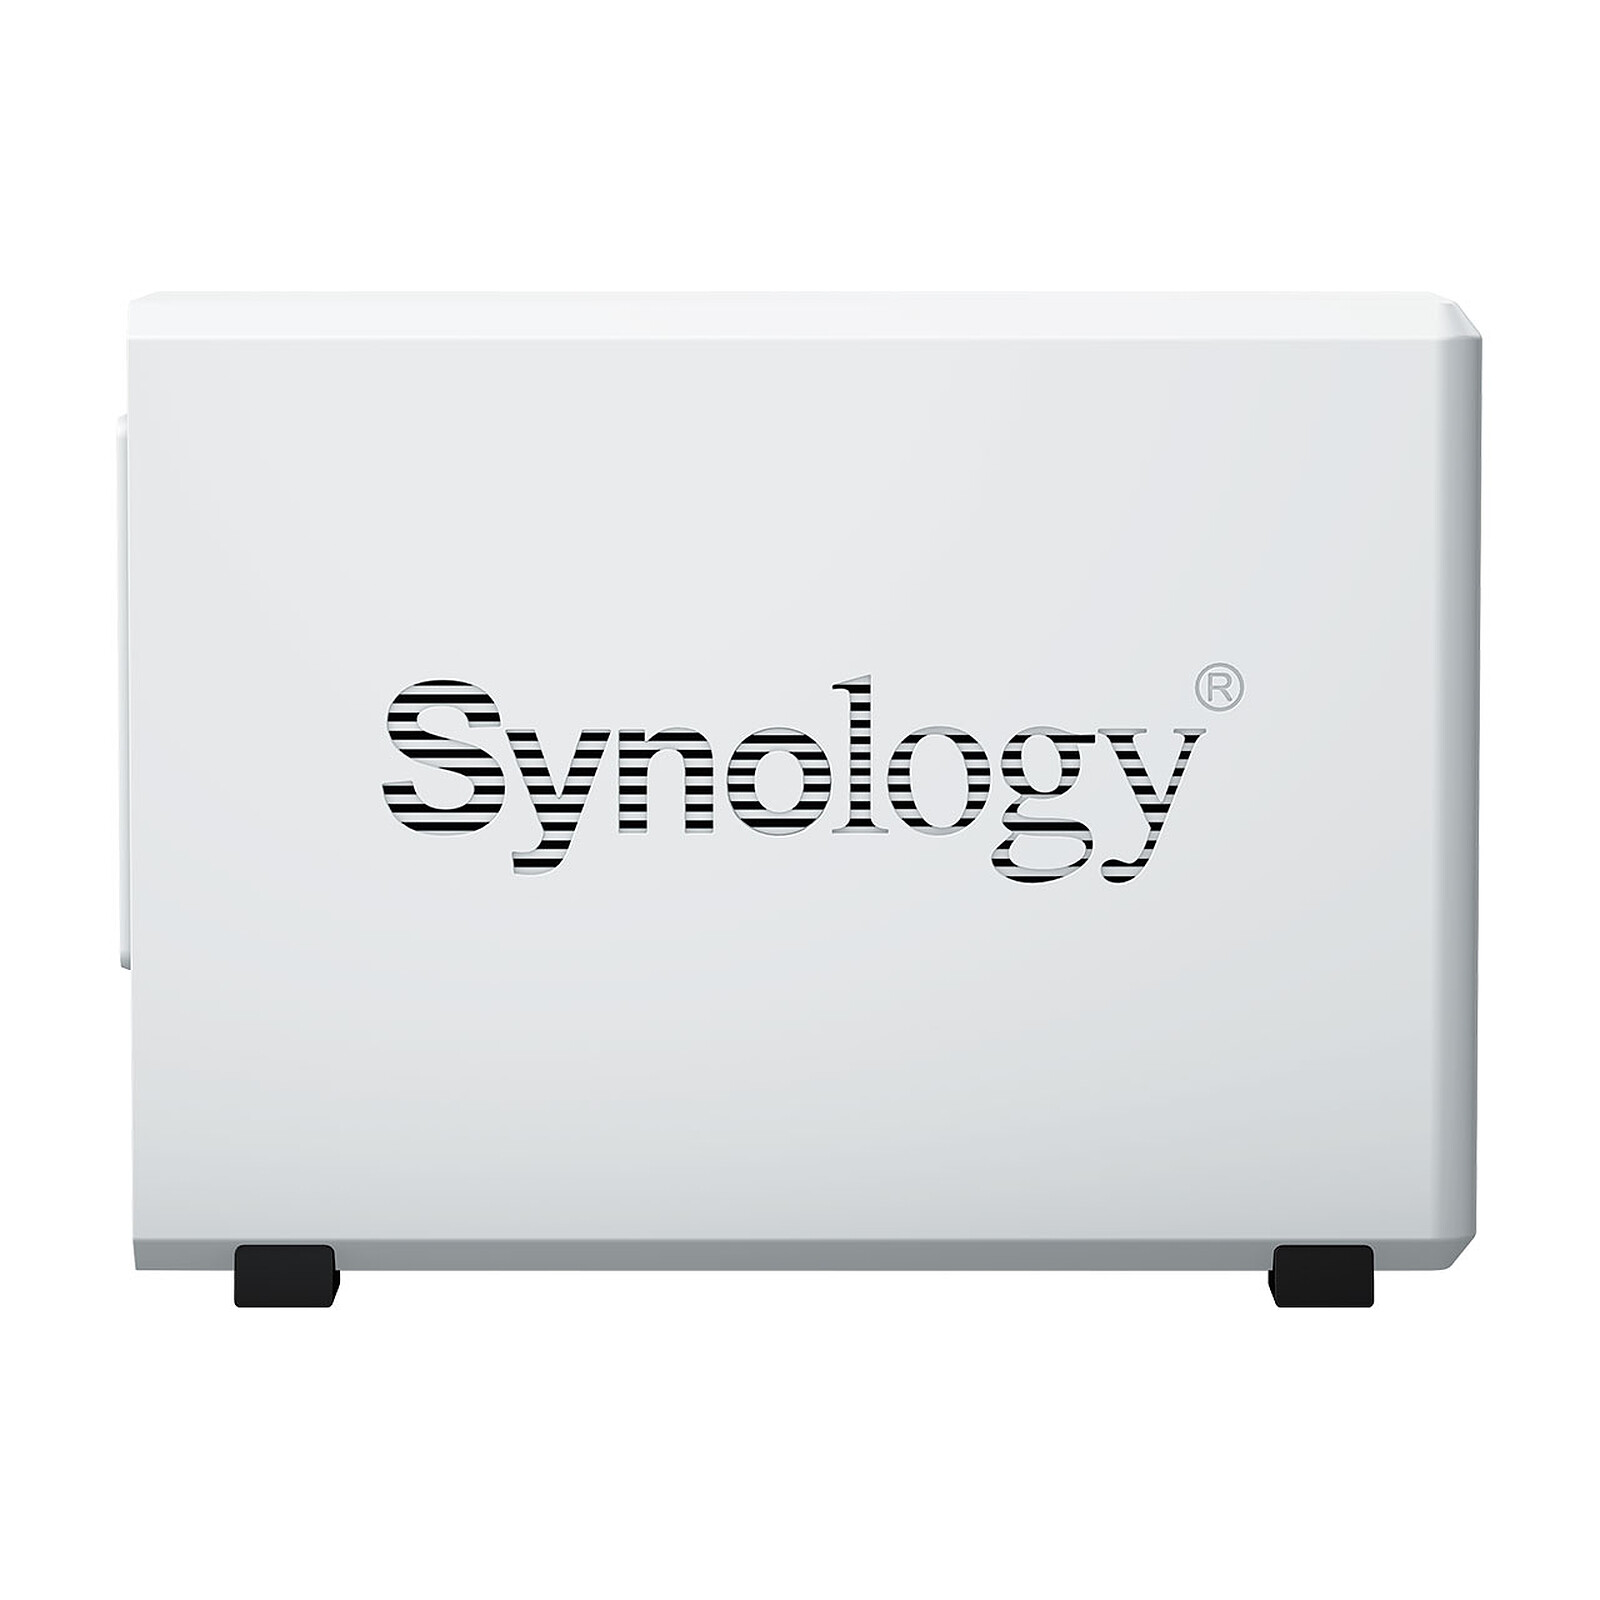 Synology DiskStation DS223j Serveur NAS 2 baie + 2 Disques HDD SATA 3,5  série Plus de 8To